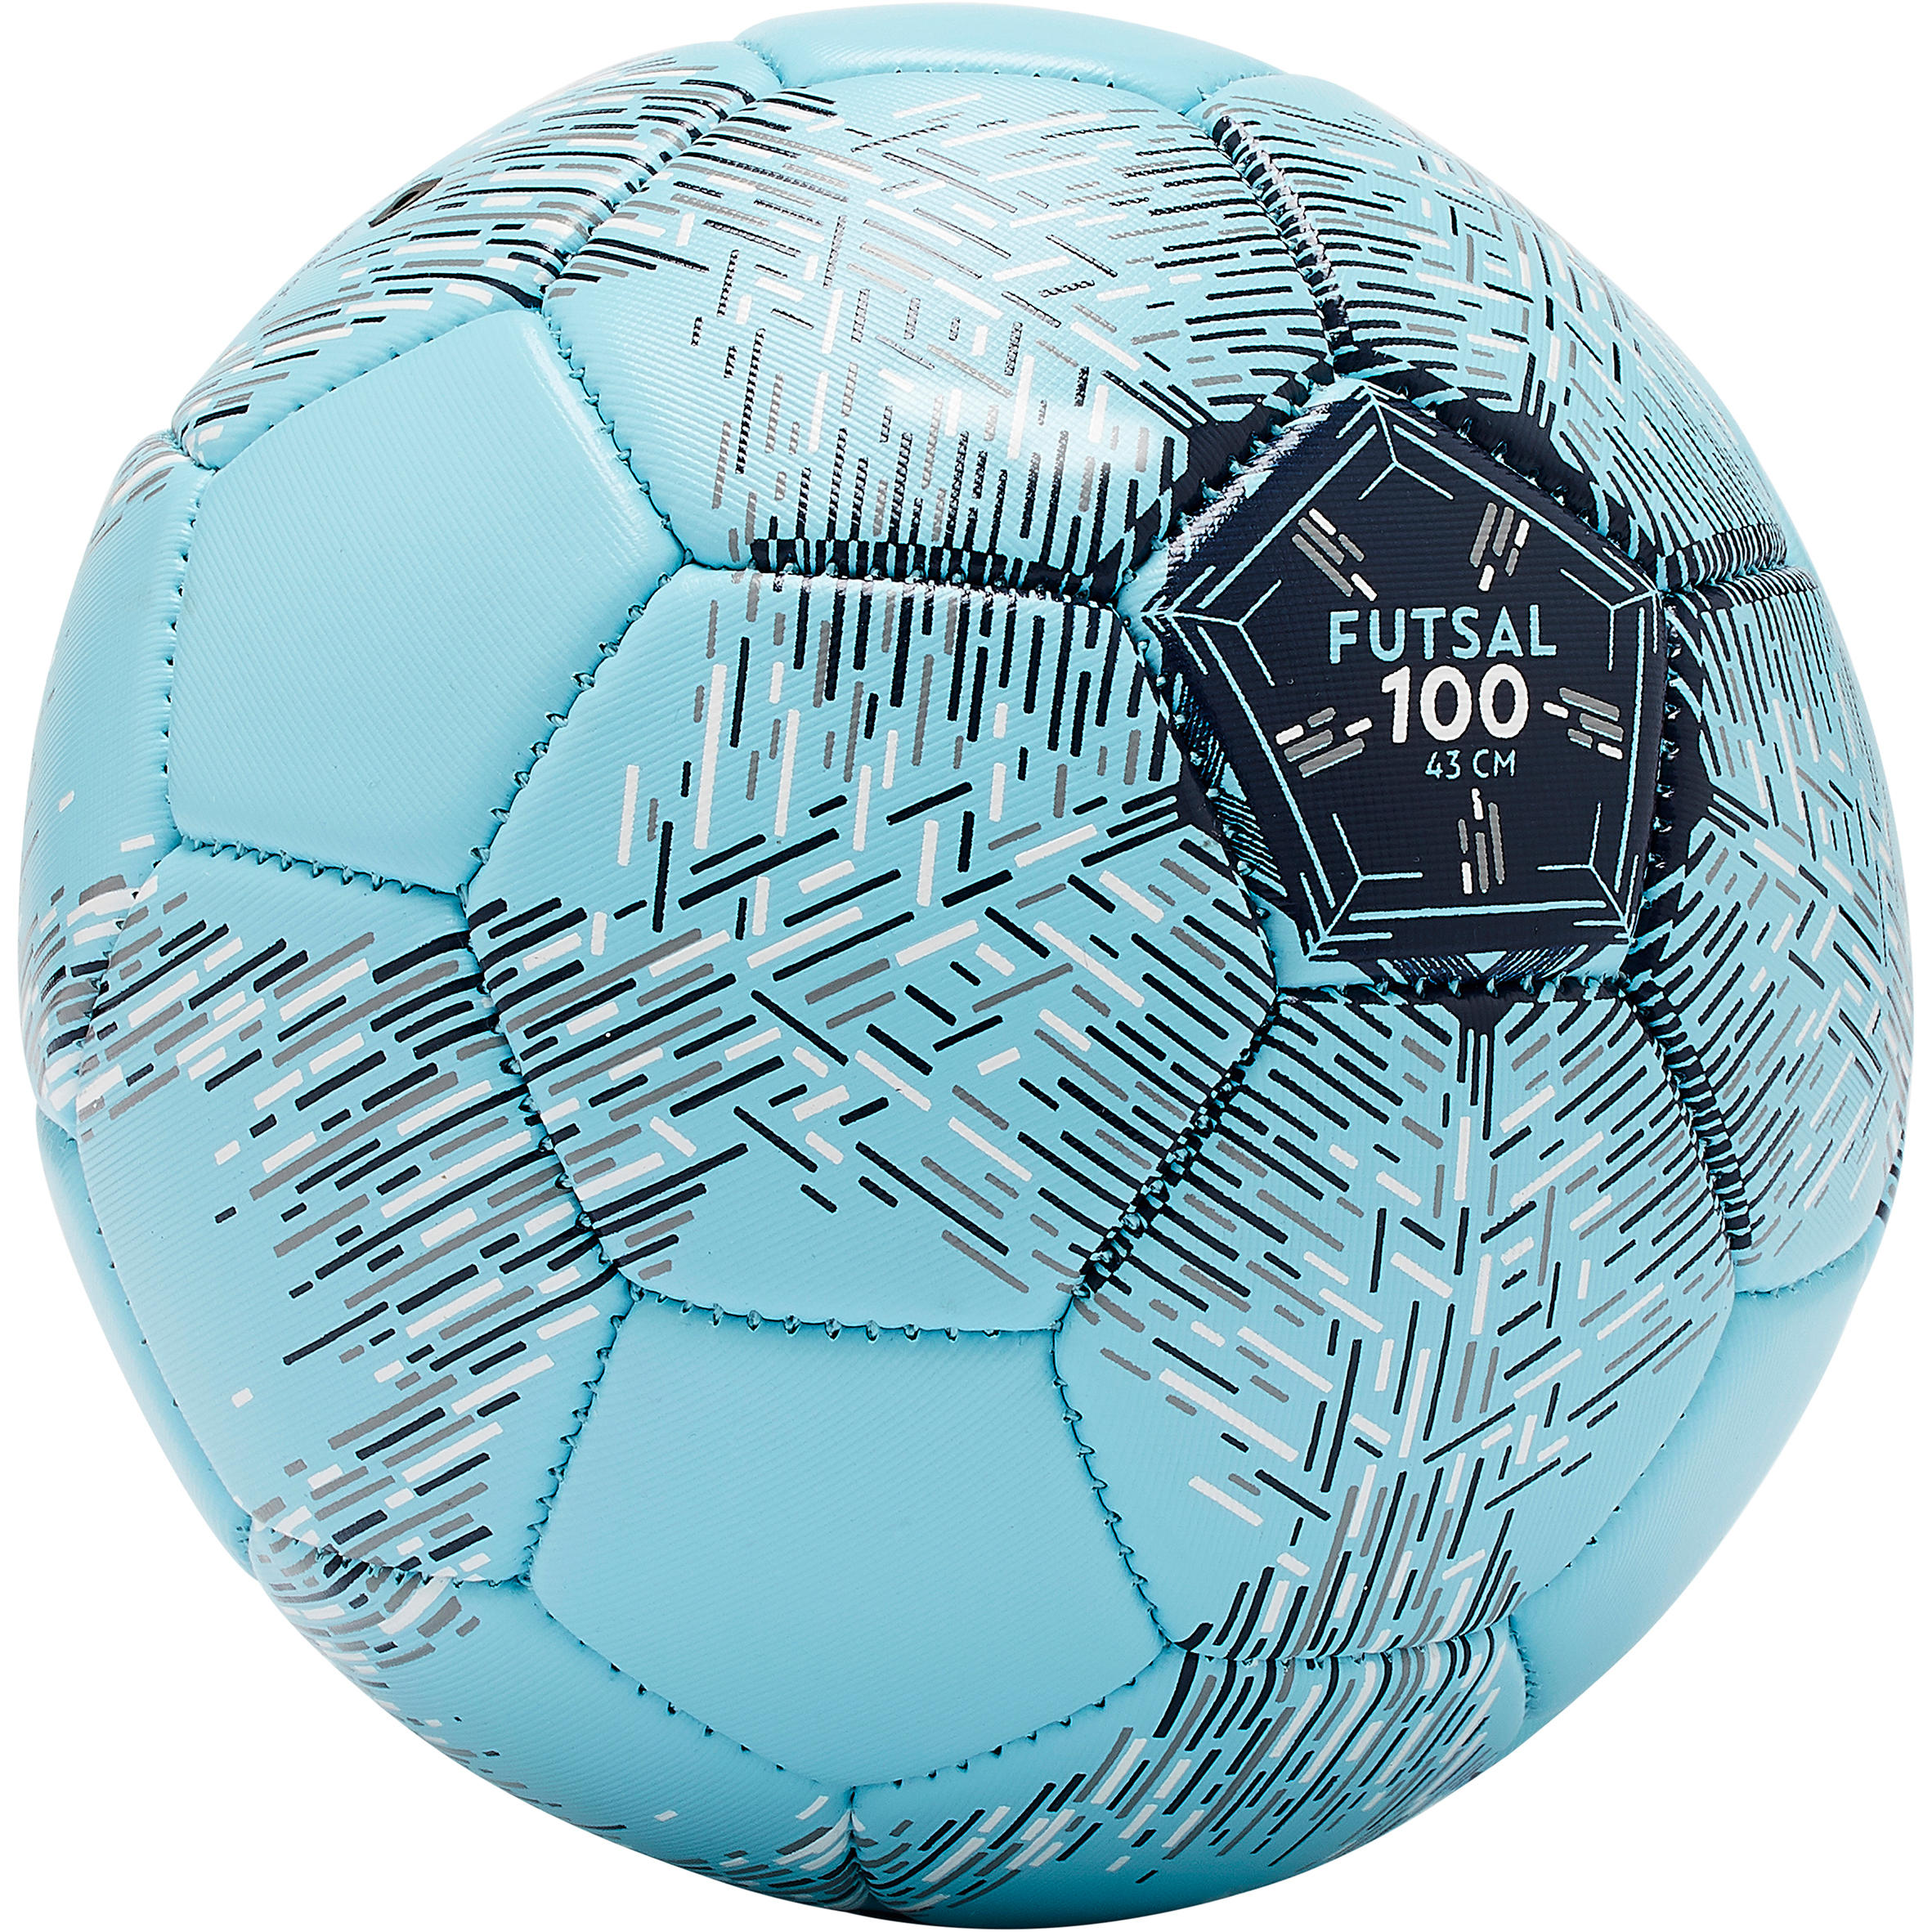 Minge Futsal FS100 43 cm MÄƒrimea 1